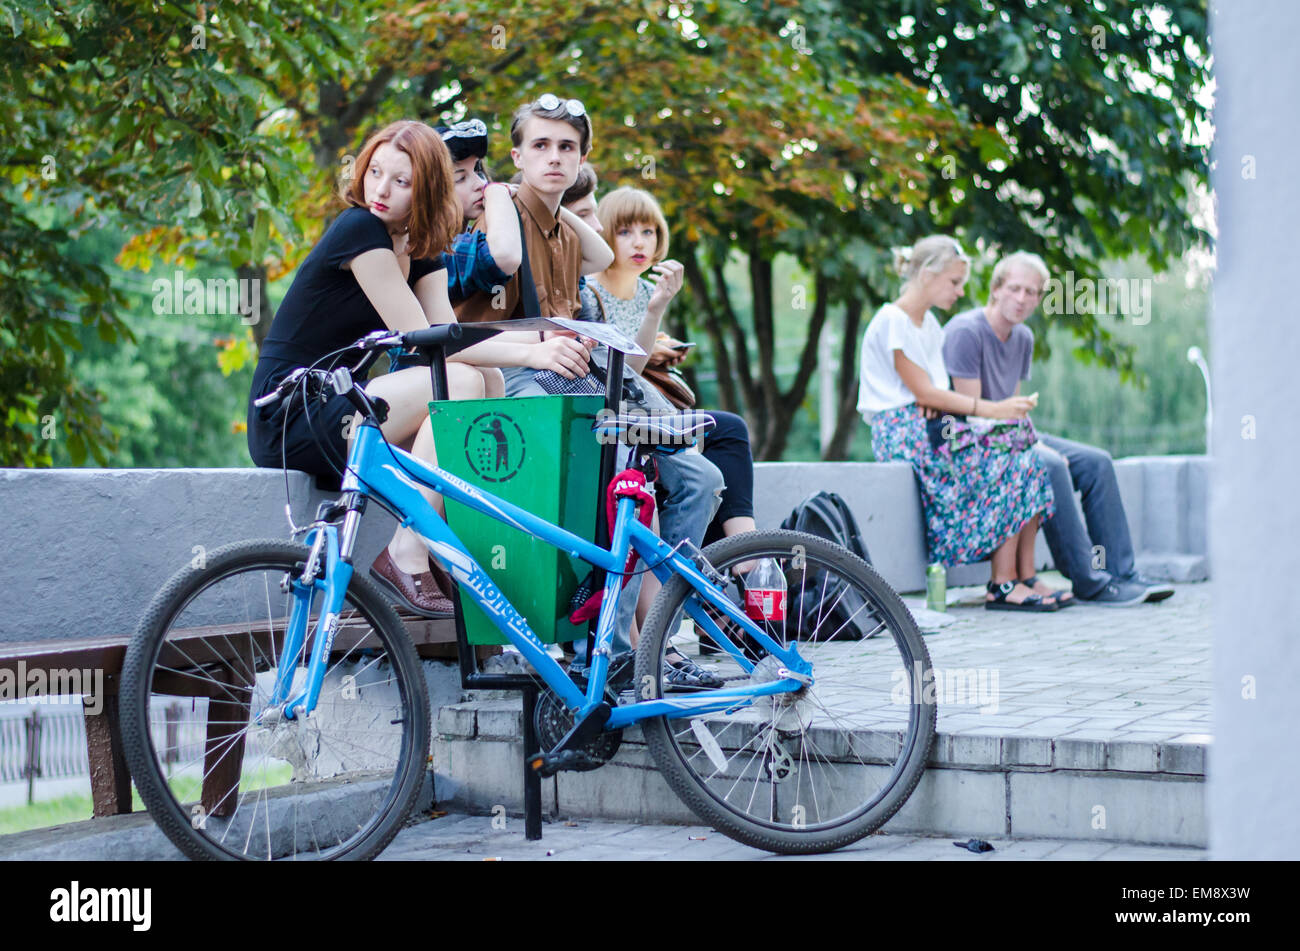 Muy bueno e interesante los adolescentes están buscando emplazamiento detrás de una bicicleta Foto de stock